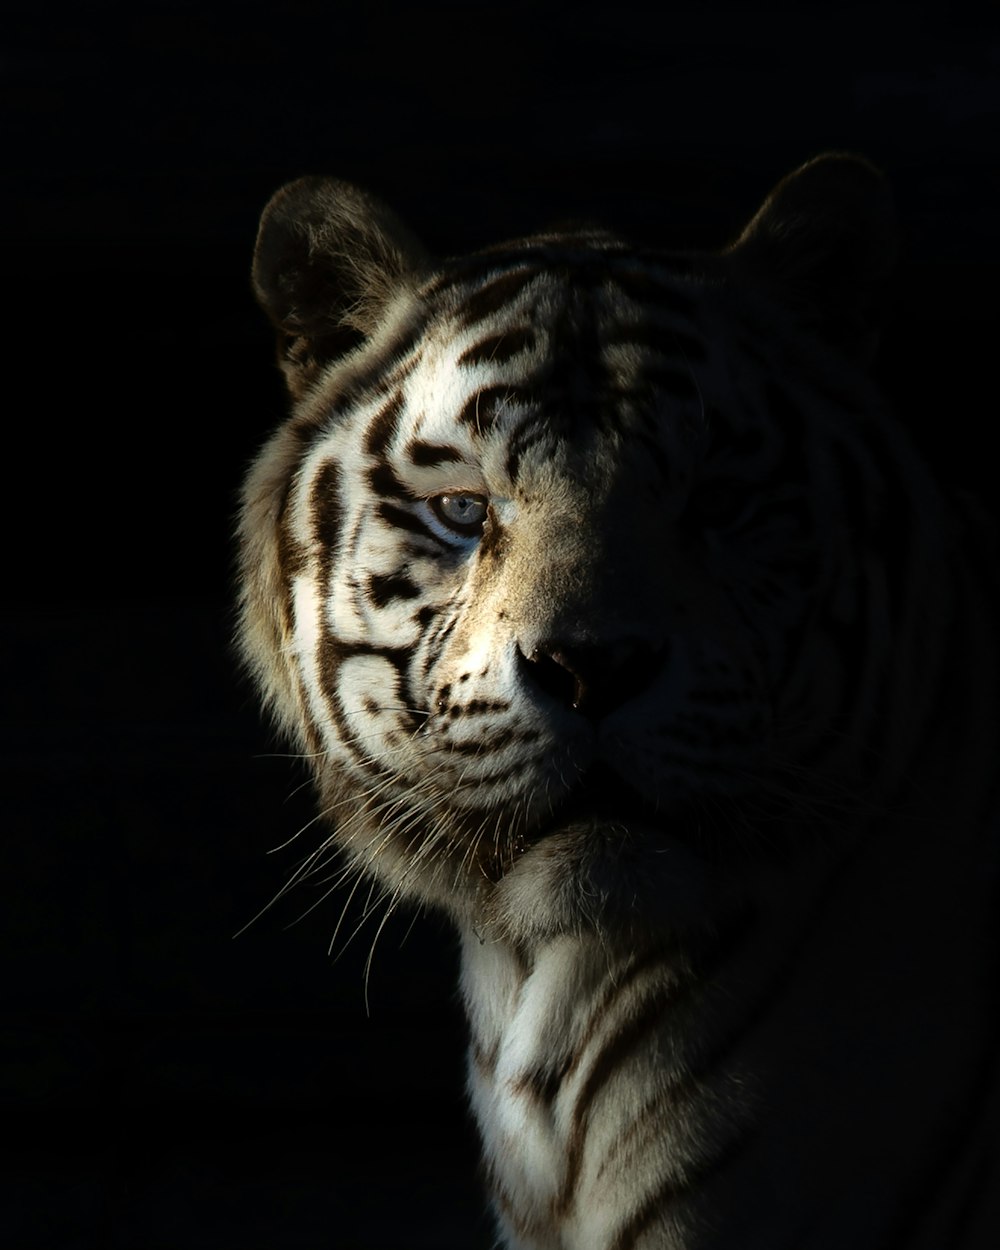 Un tigre mirando a la cámara